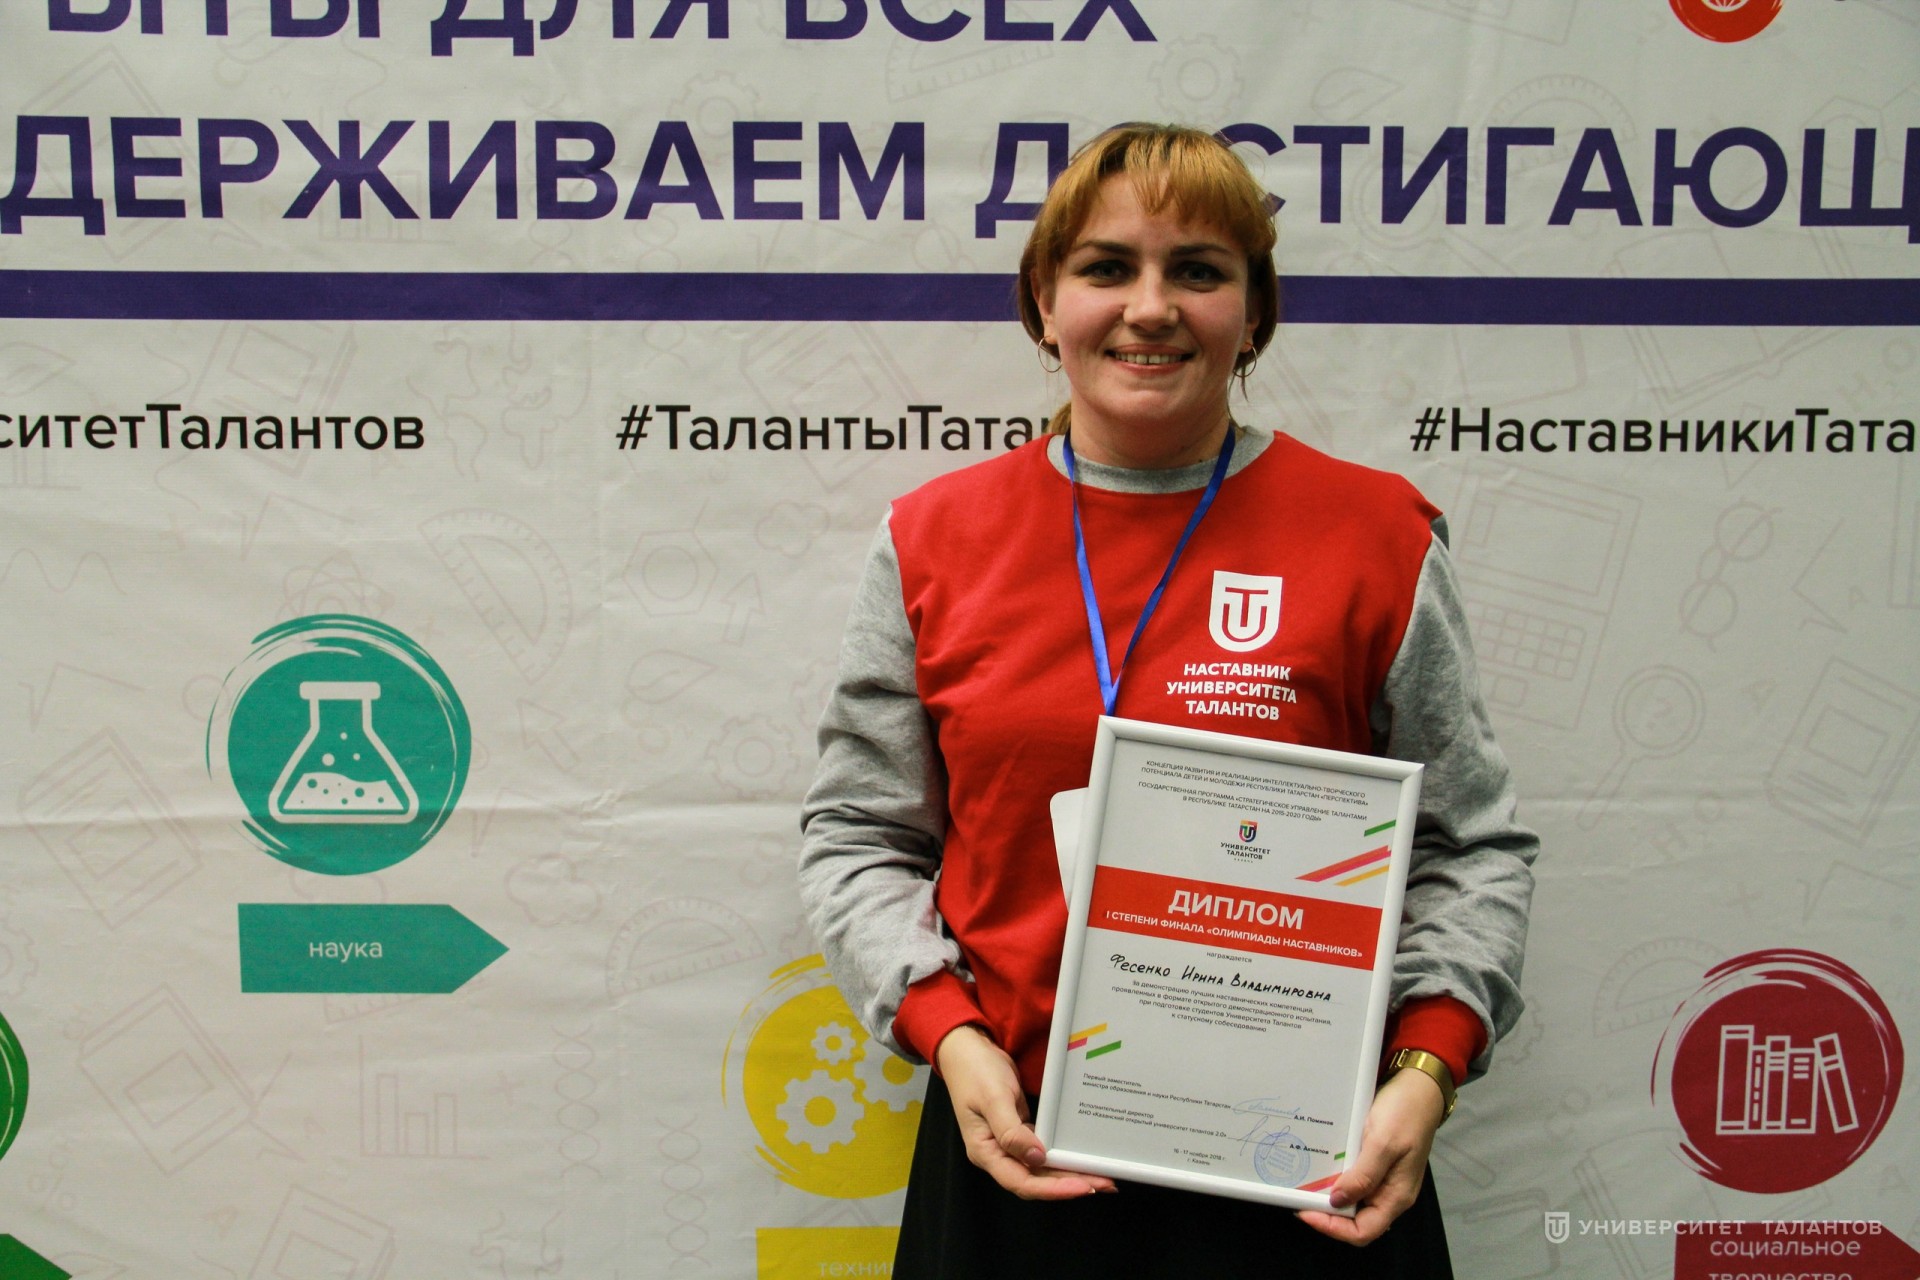 Ирина Фесенко: «Наличие возможностей для развития наставников в нашей республике вдохновляет двигаться дальше»